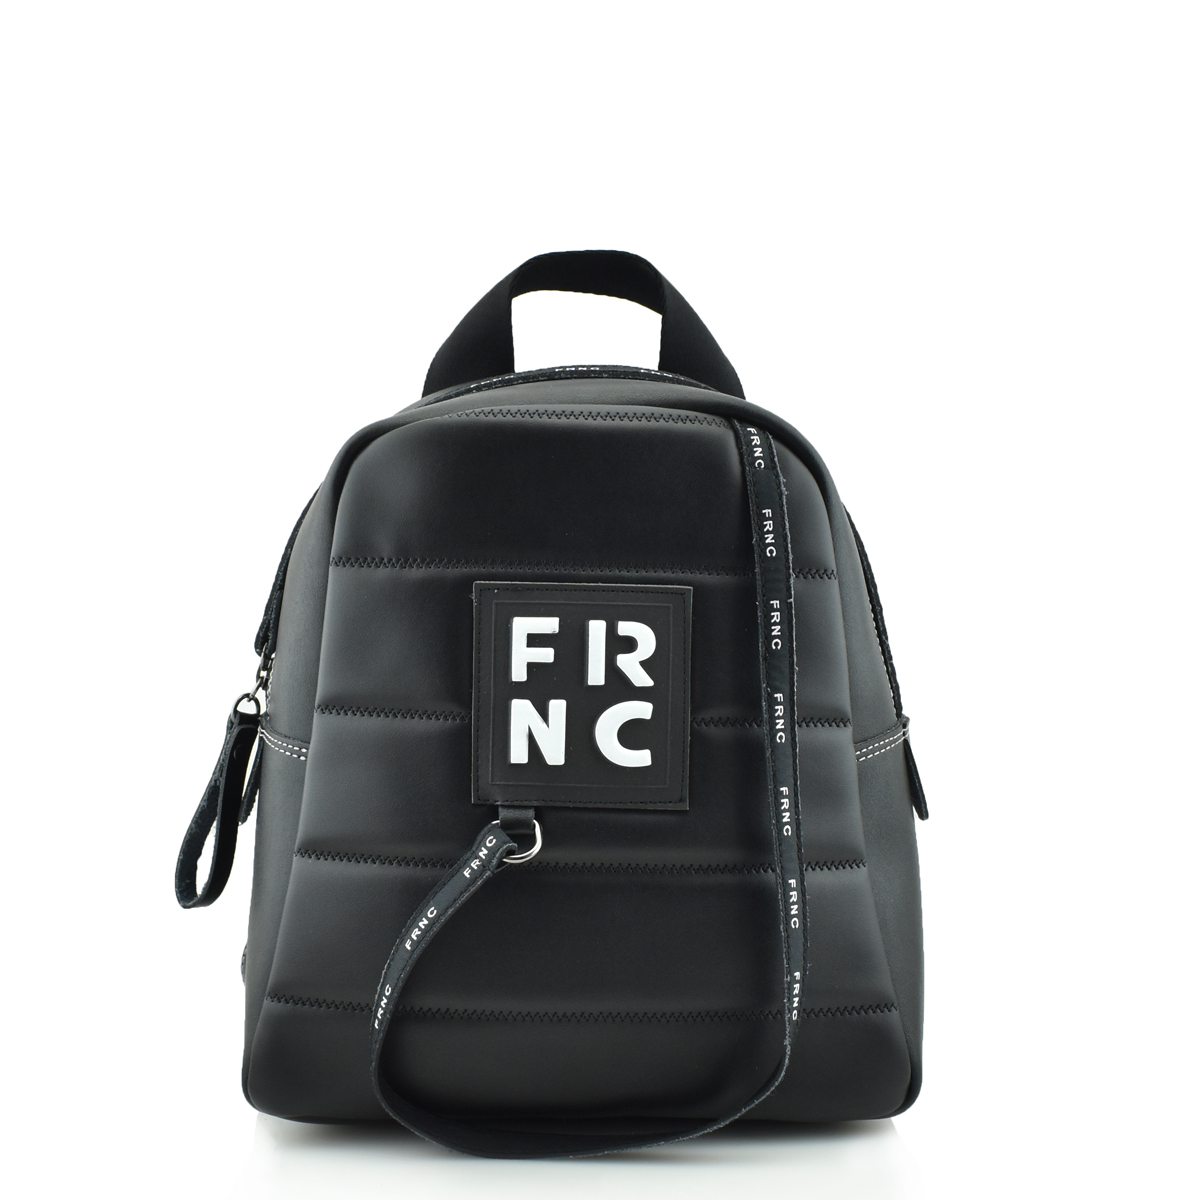 FRNC - FRANCESCO CLASSIC MINI FULL BLACK BACKPACK - 2131 FULL BLACK